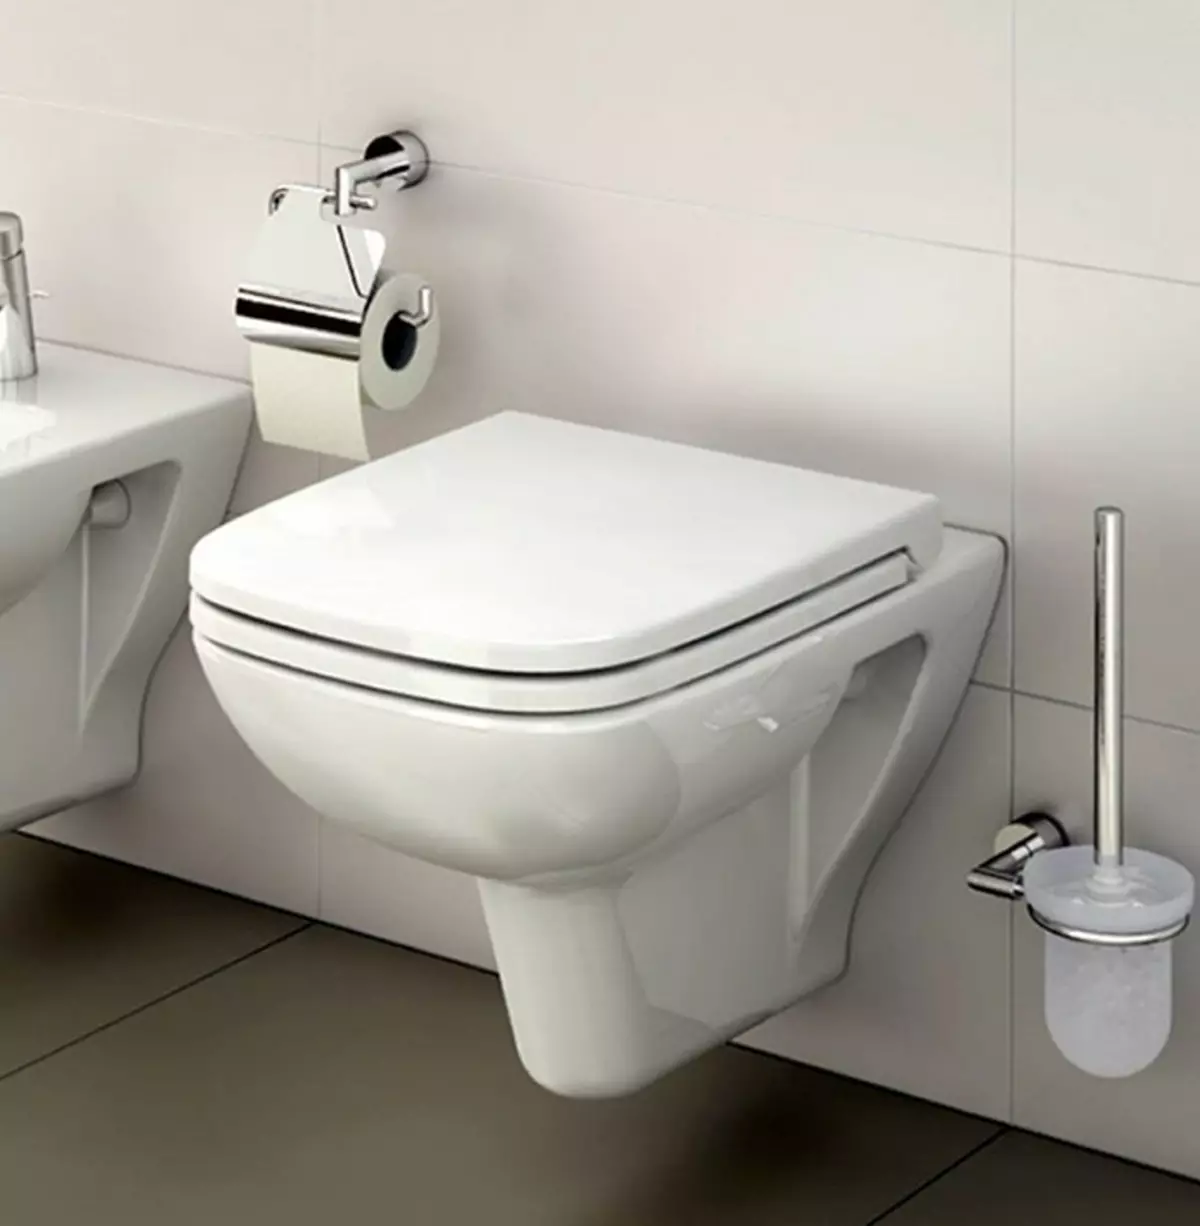 विट्रा शौचालय: निलंबित और उग्र तुर्की शौचालयों की विशेषताएं, मॉडल ज़ेंट्रम और सेंटो की समीक्षा, ढक्कन और आउटडोर सेरेनाडा के साथ Arkitekt कॉर्नर शौचालय, समीक्षा 10522_20